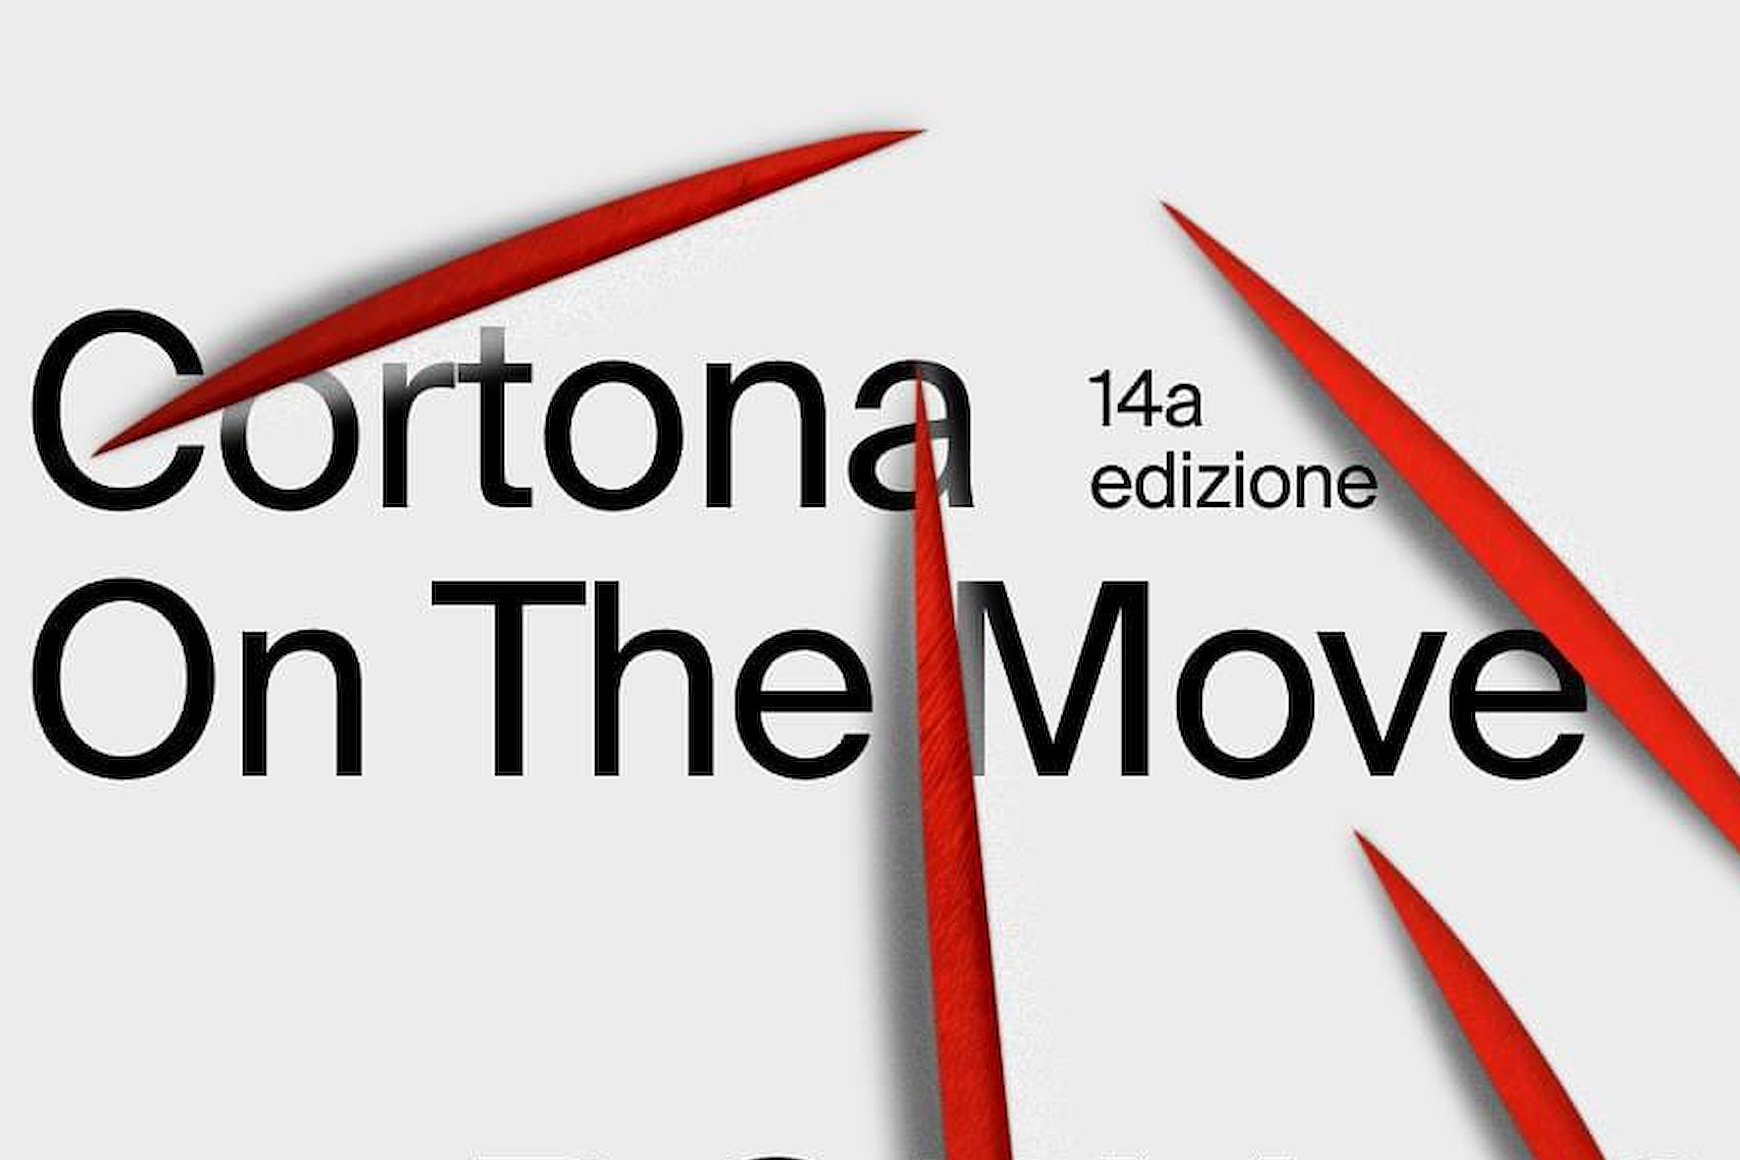 Cortona On The Move